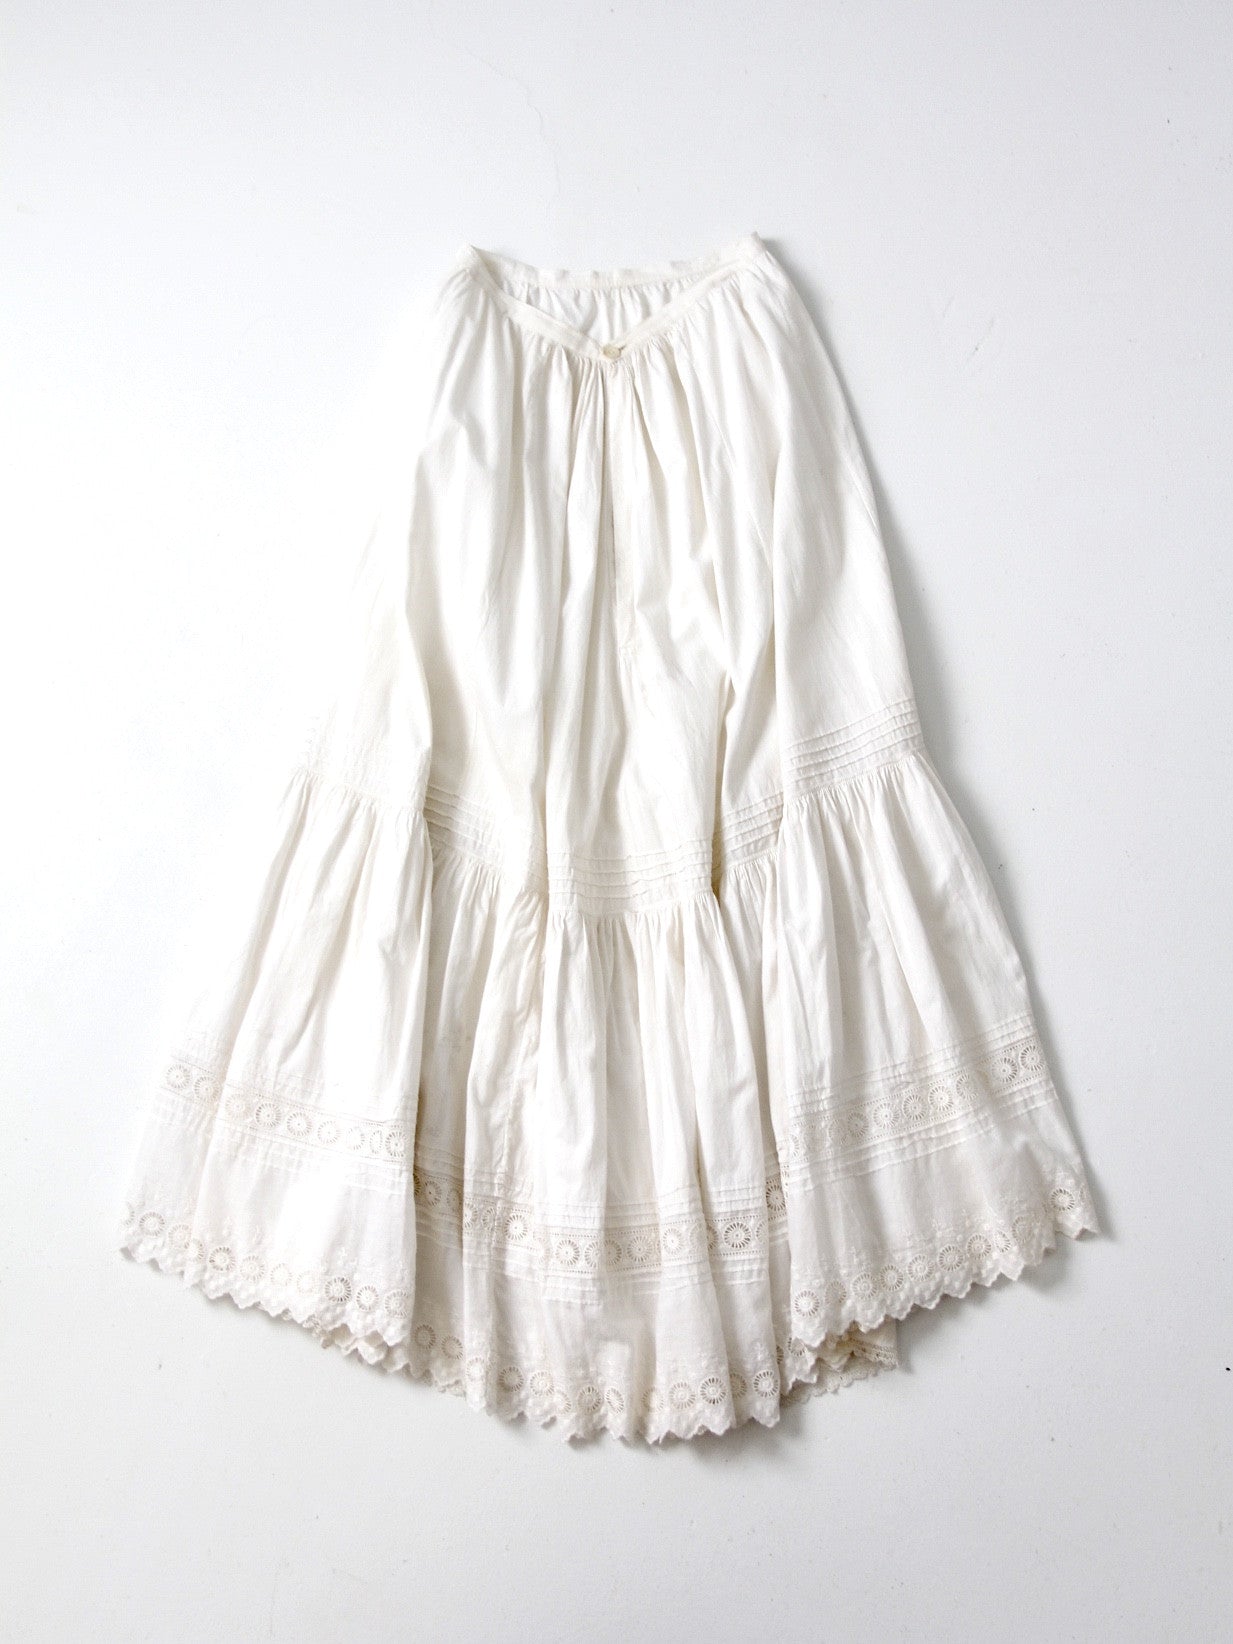 antique Victorian skirt petticoat